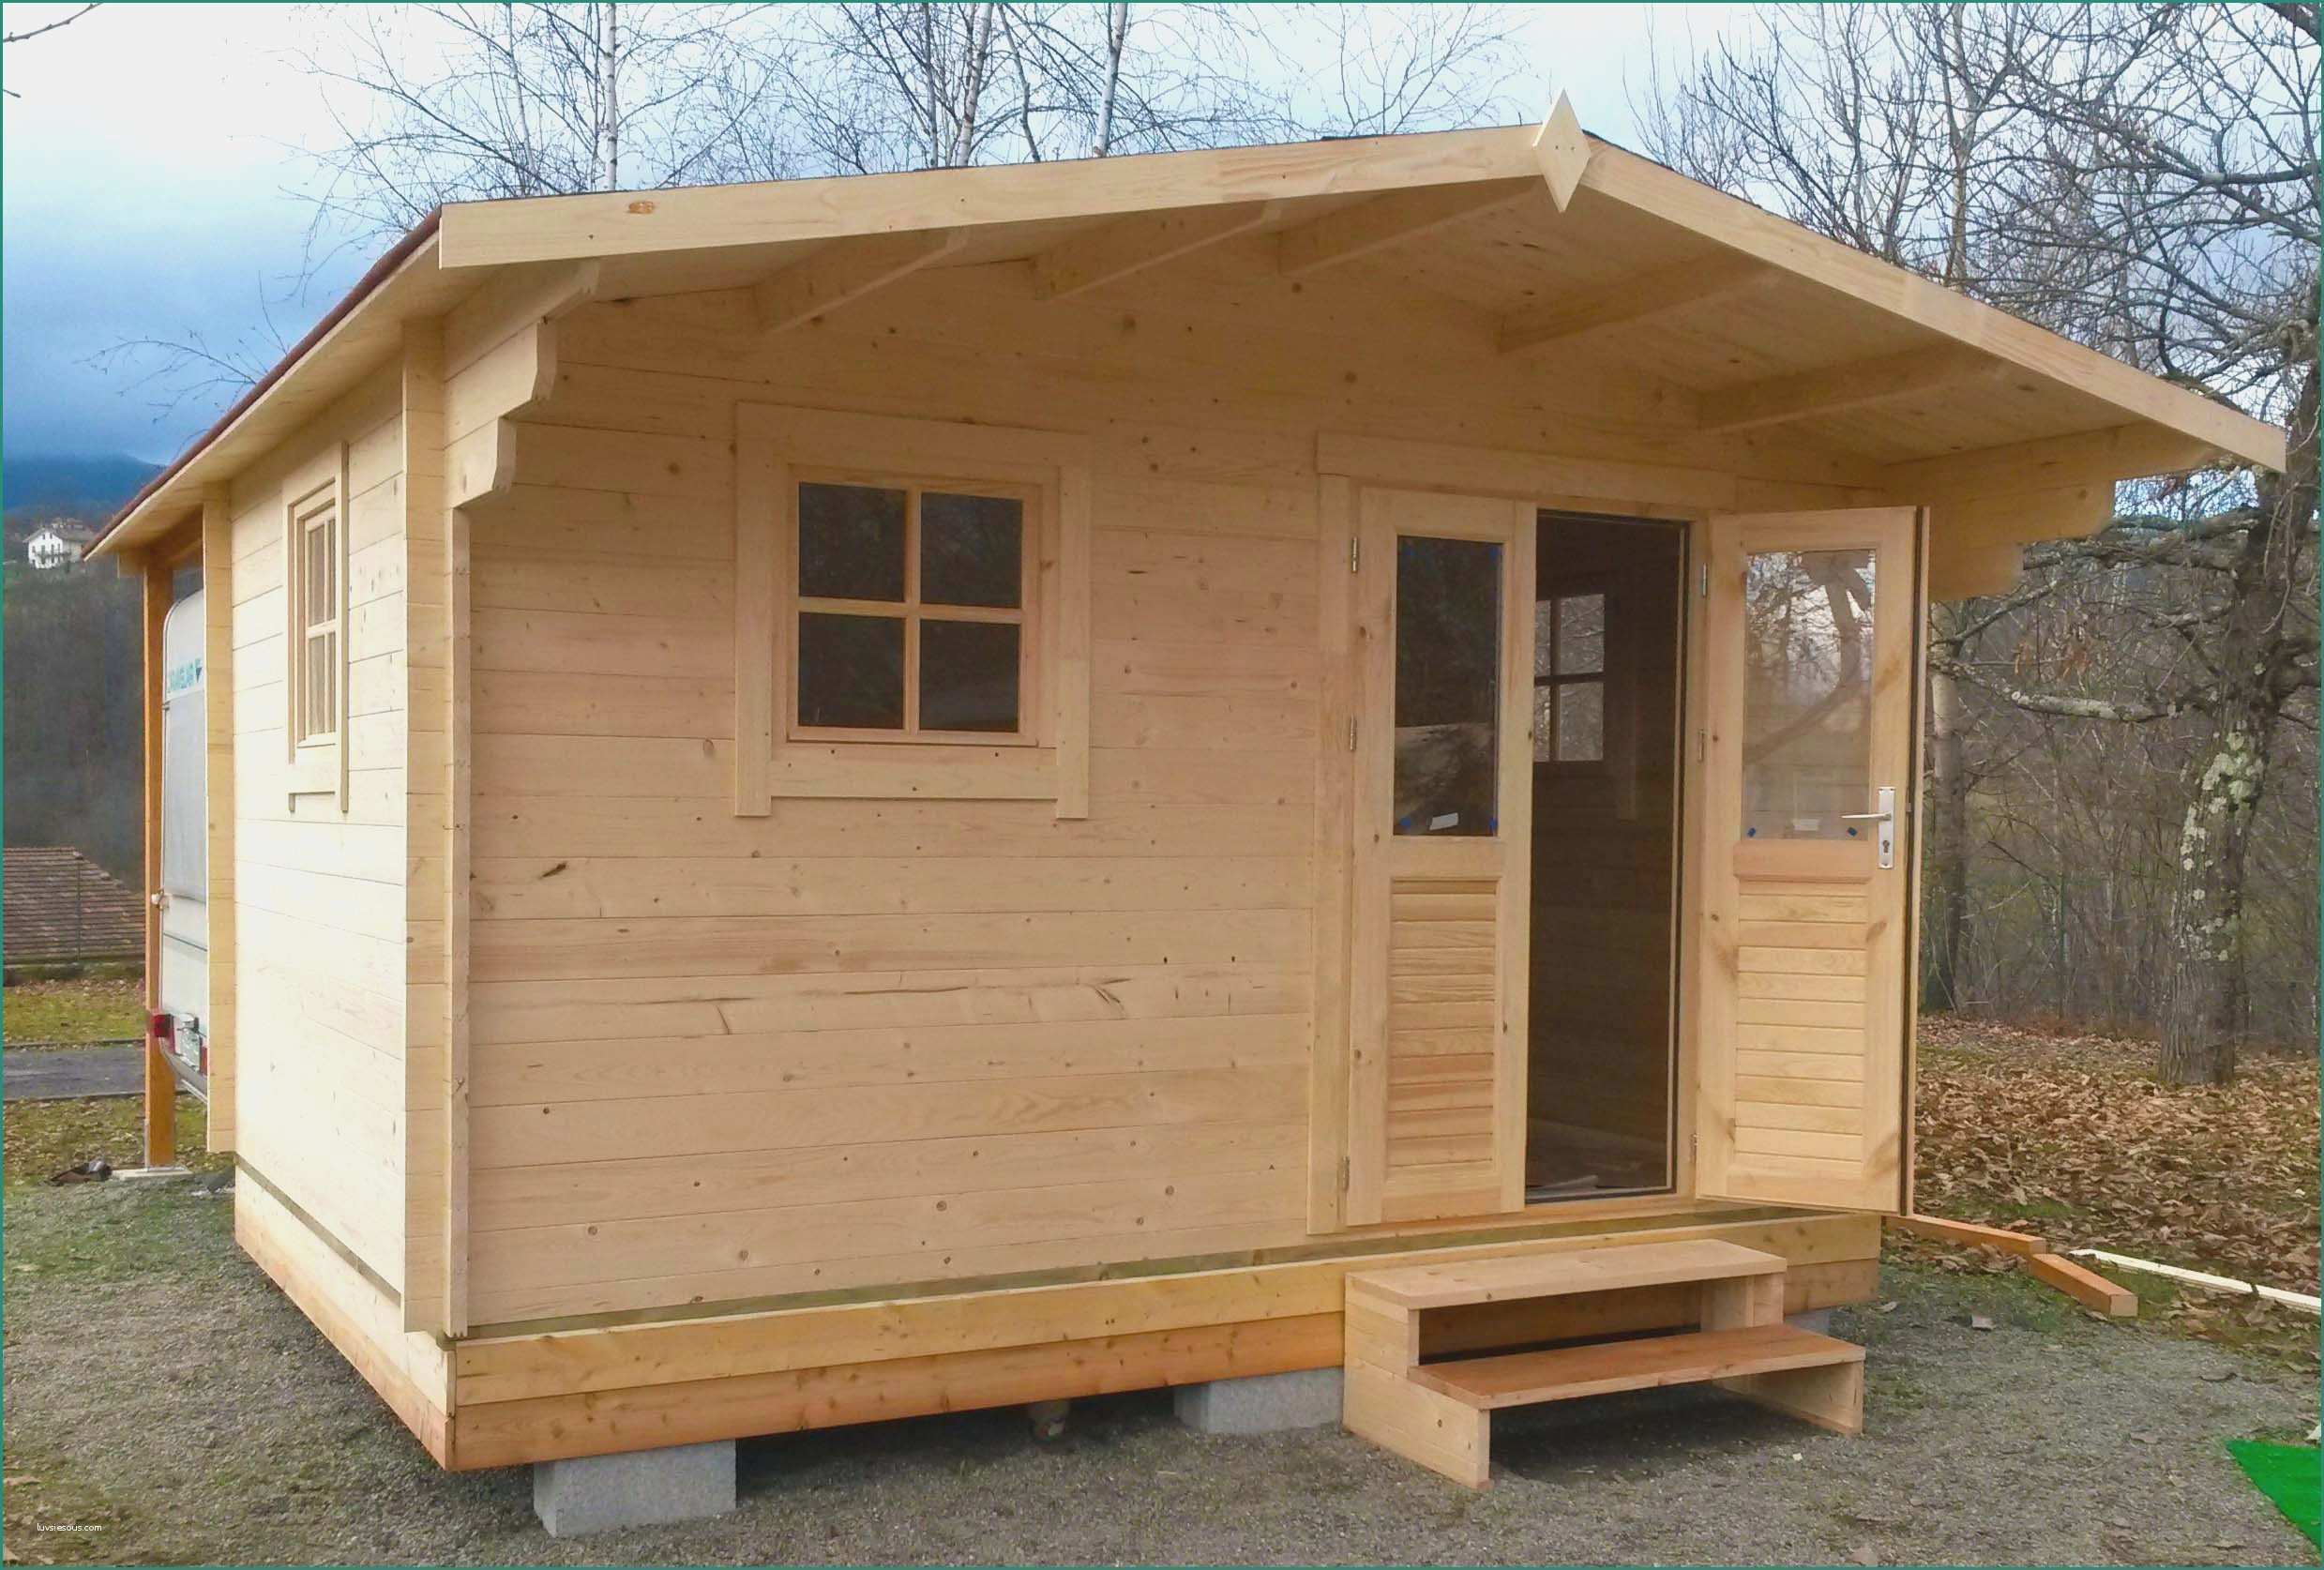 Case in legno su terreno agricolo e elegante case mobili for Case in legno prefabbricate su terreno agricolo